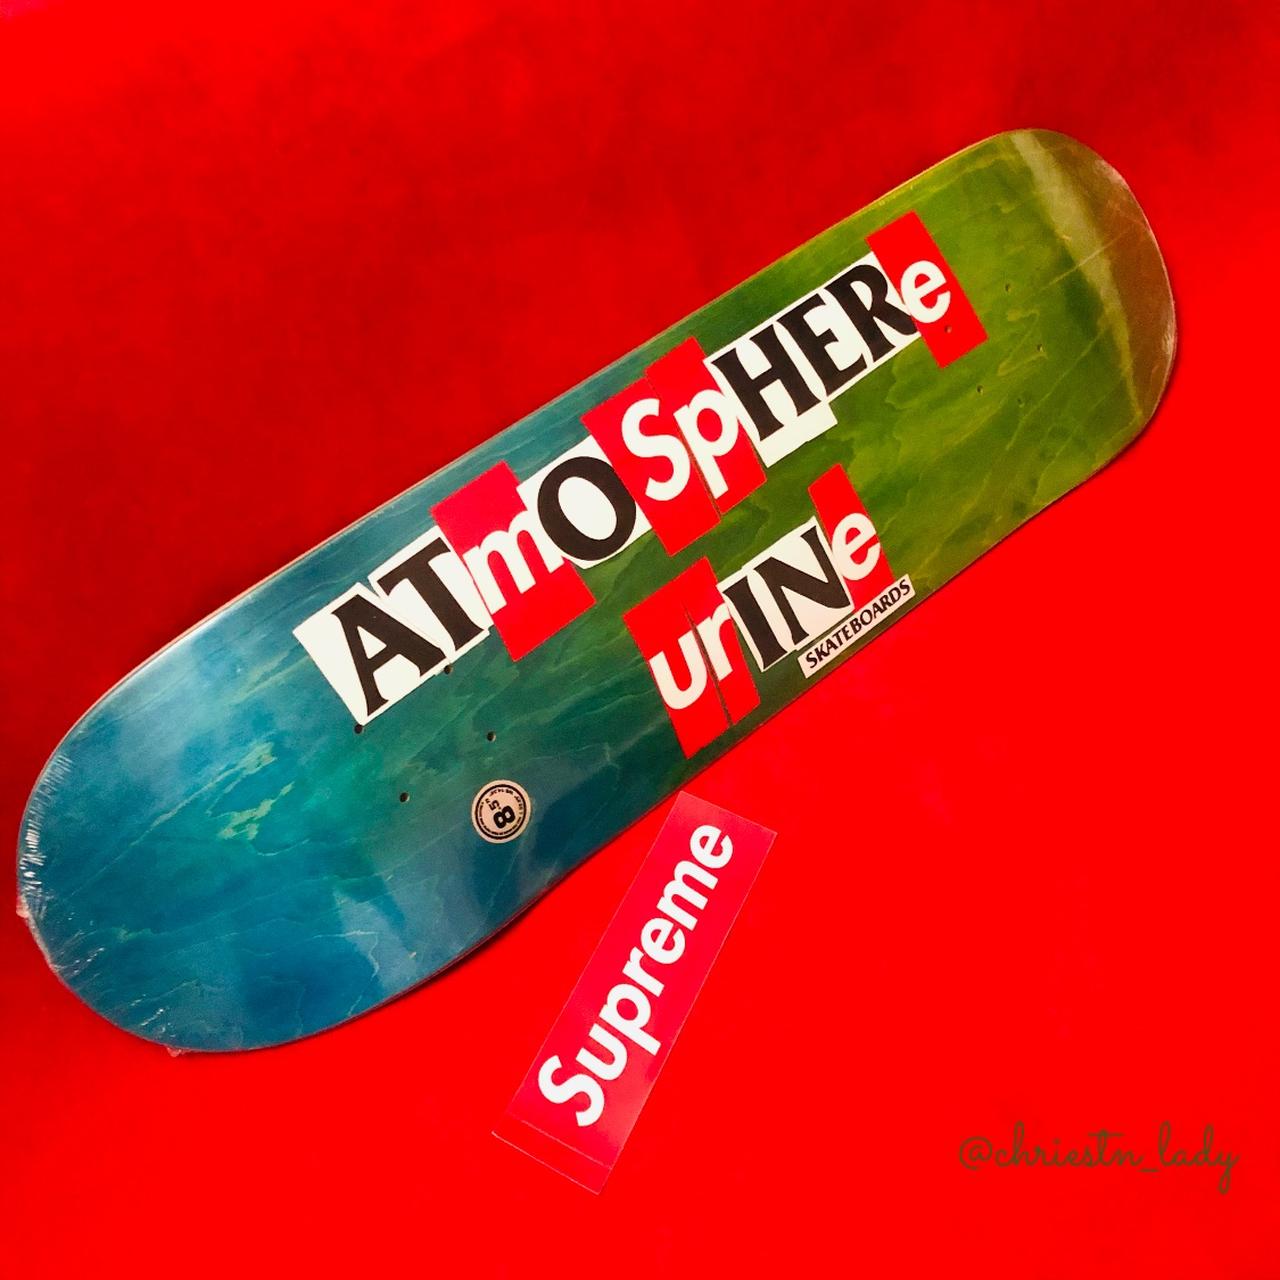 Supreme Antihero Skateboard Deck “Atmosphere Urine”... - Depop